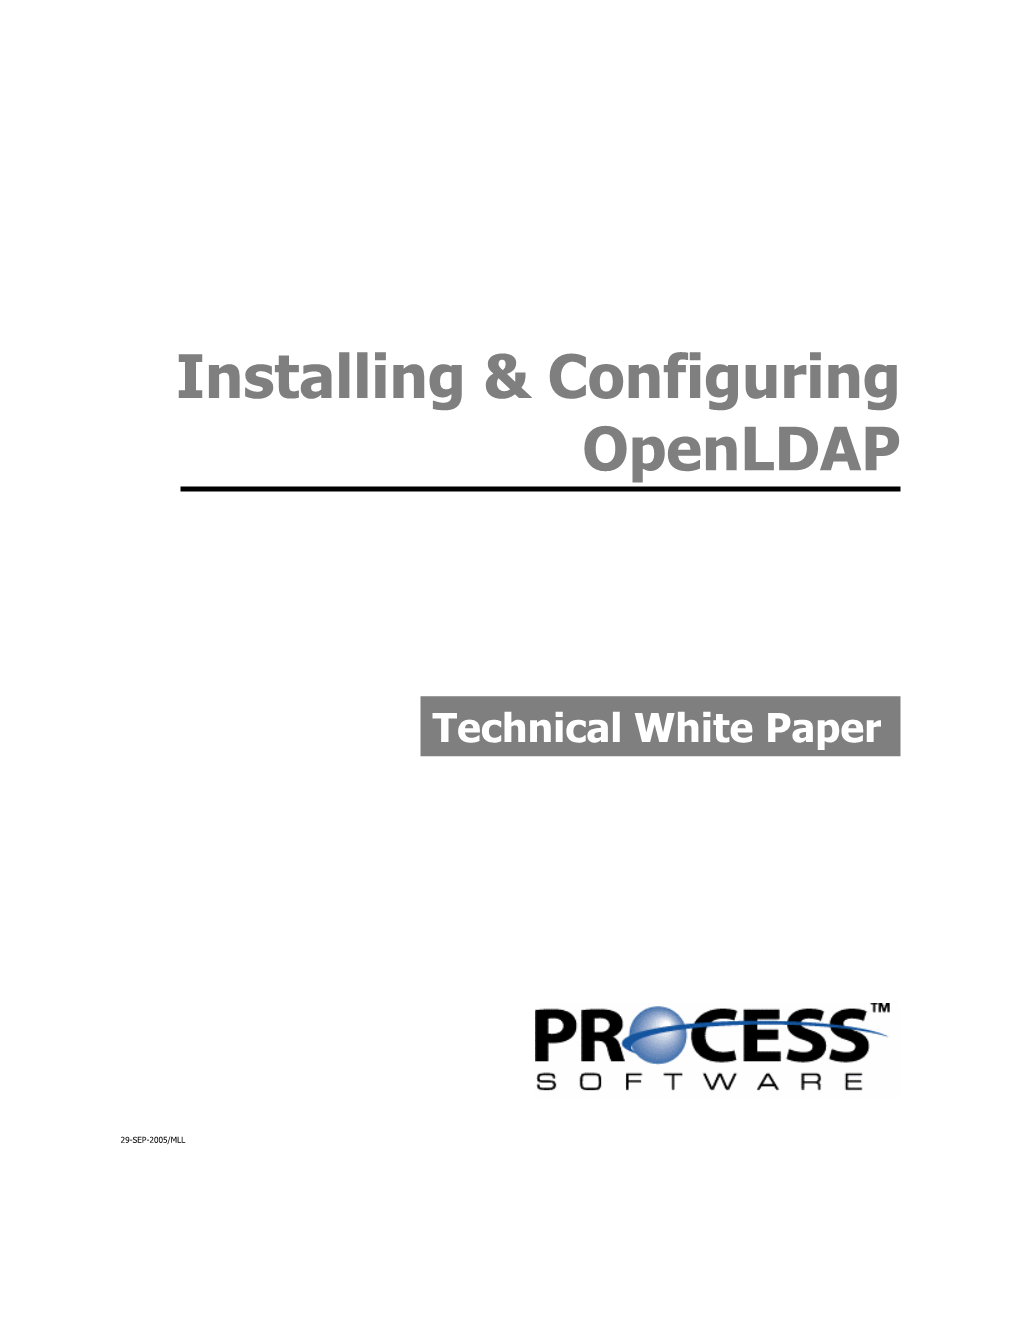 Installing & Configuring Openldap